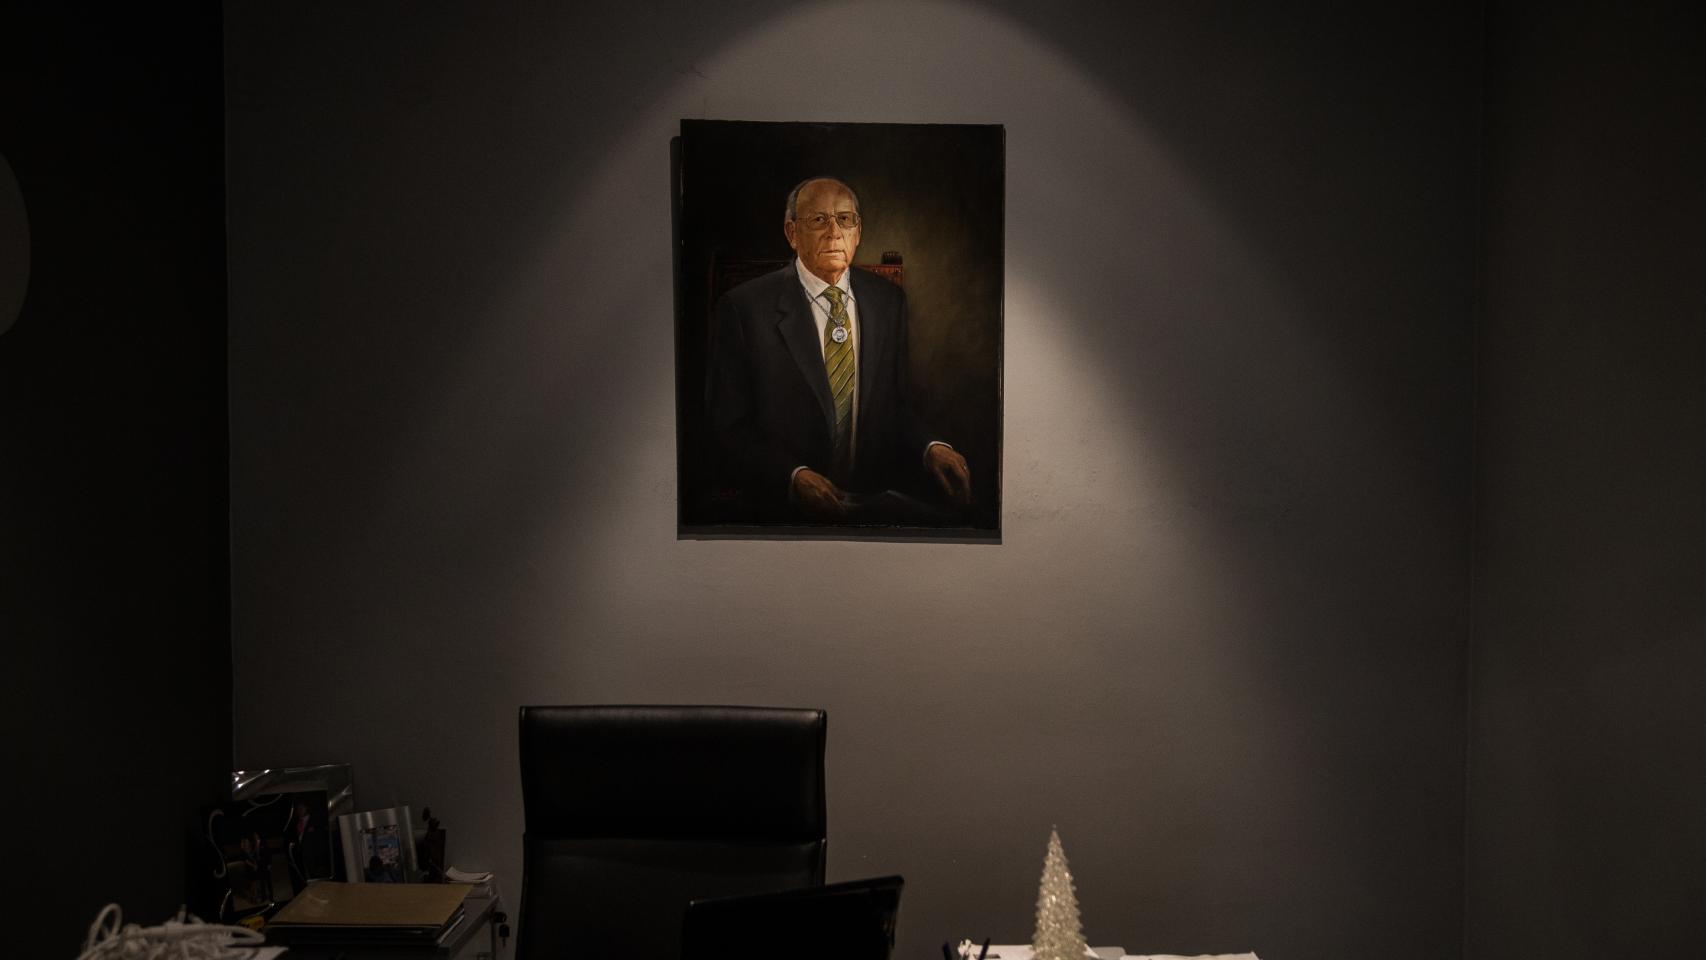 La imagen del fundador de Ximénez, Francisco Jiménez, fallecido en 2001, presidiendo las oficinas de Ilméx.